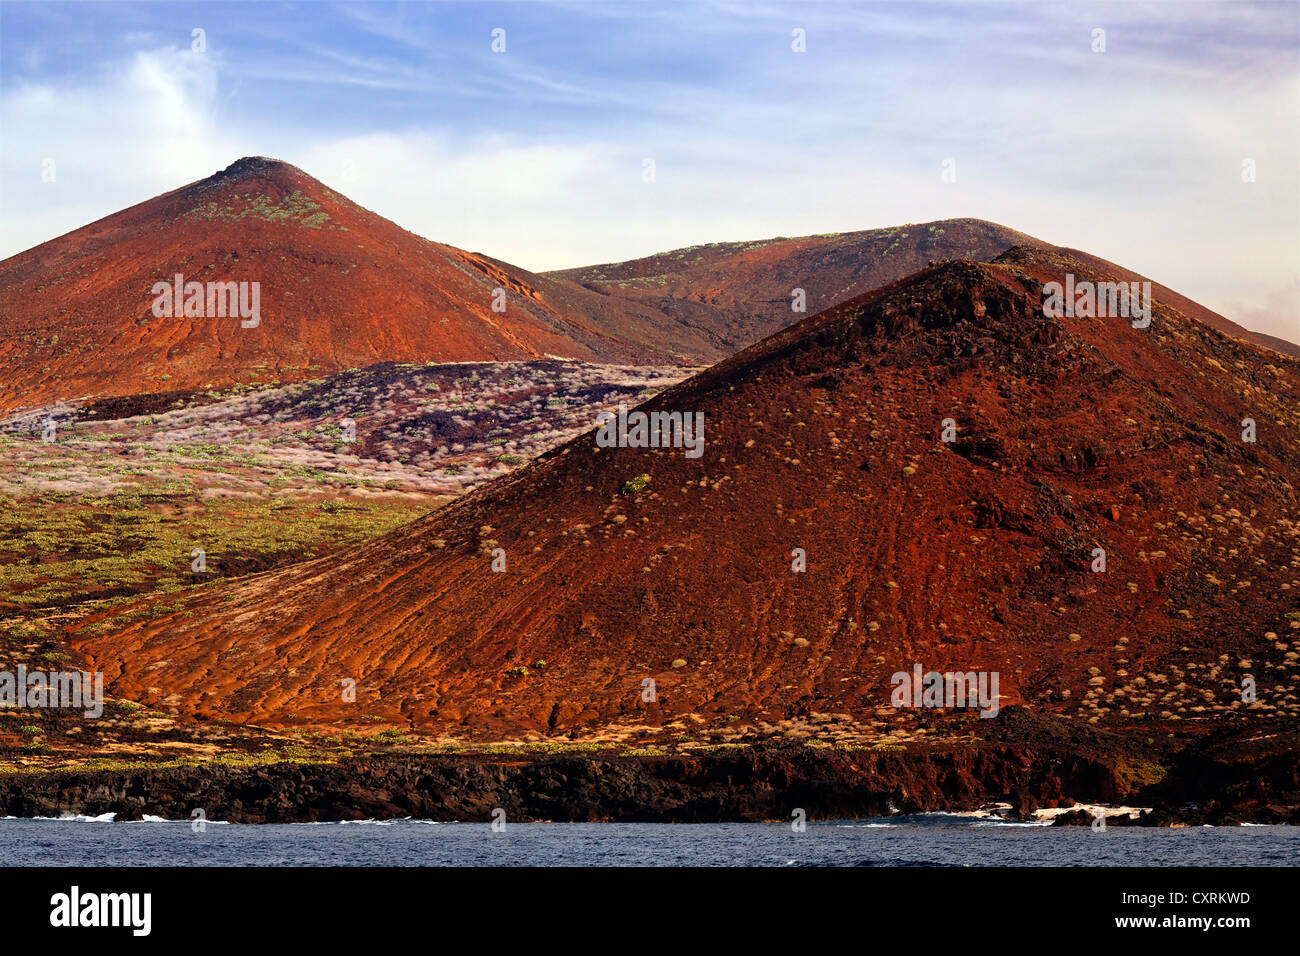 Paysage de collines volcaniques sur la côte, l'île de San Benedicto, près de Socorro, Îles Revillagigedo, archipel, Mexique Banque D'Images